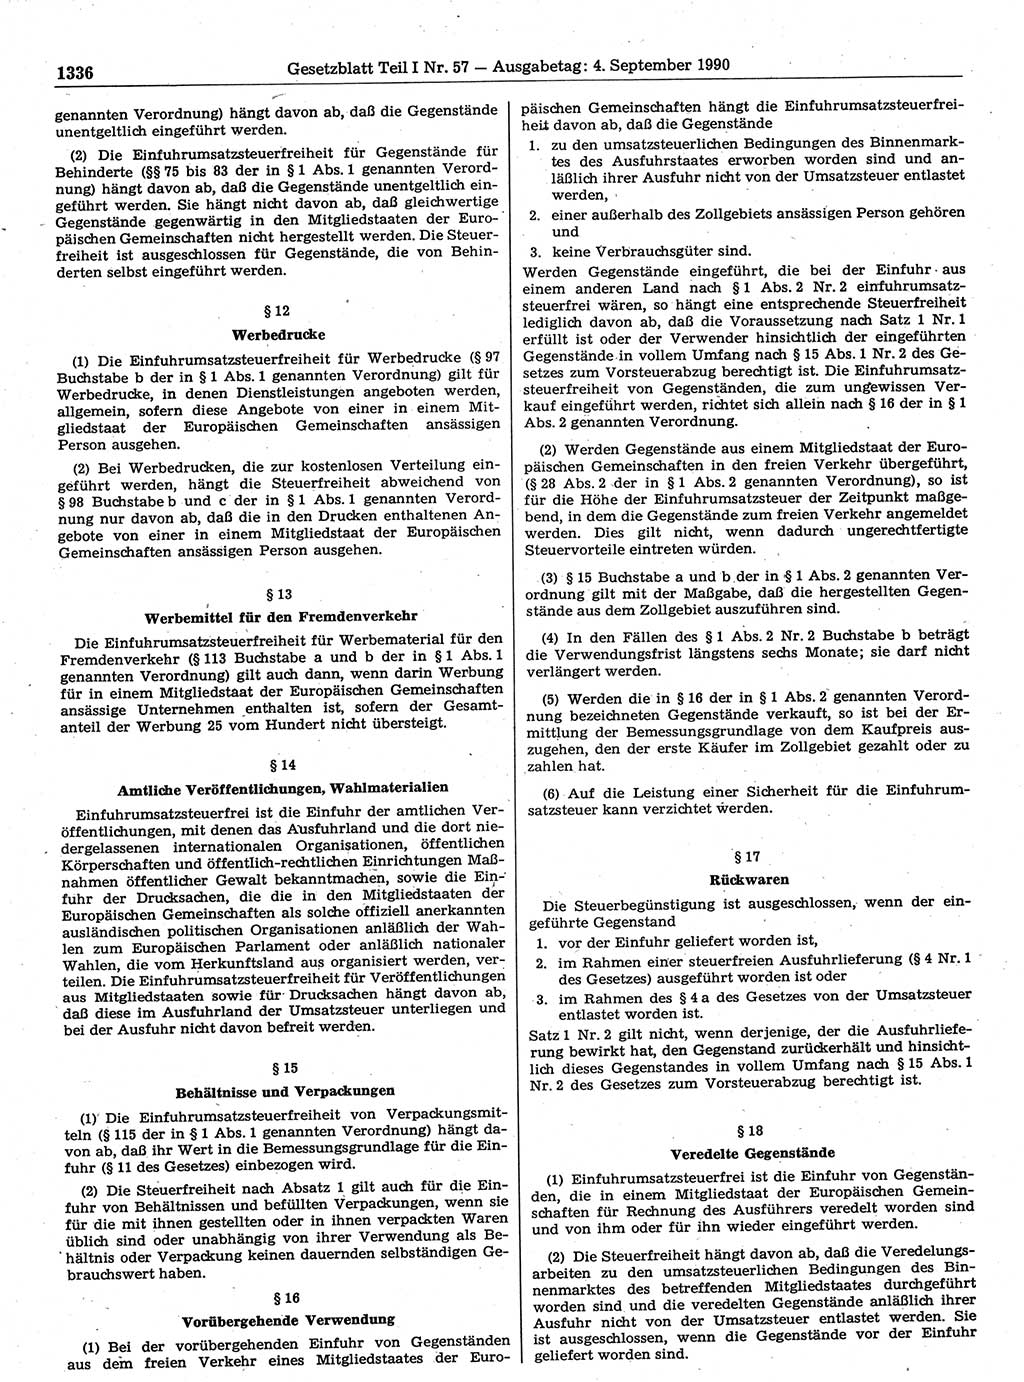 Gesetzblatt (GBl.) der Deutschen Demokratischen Republik (DDR) Teil Ⅰ 1990, Seite 1336 (GBl. DDR Ⅰ 1990, S. 1336)